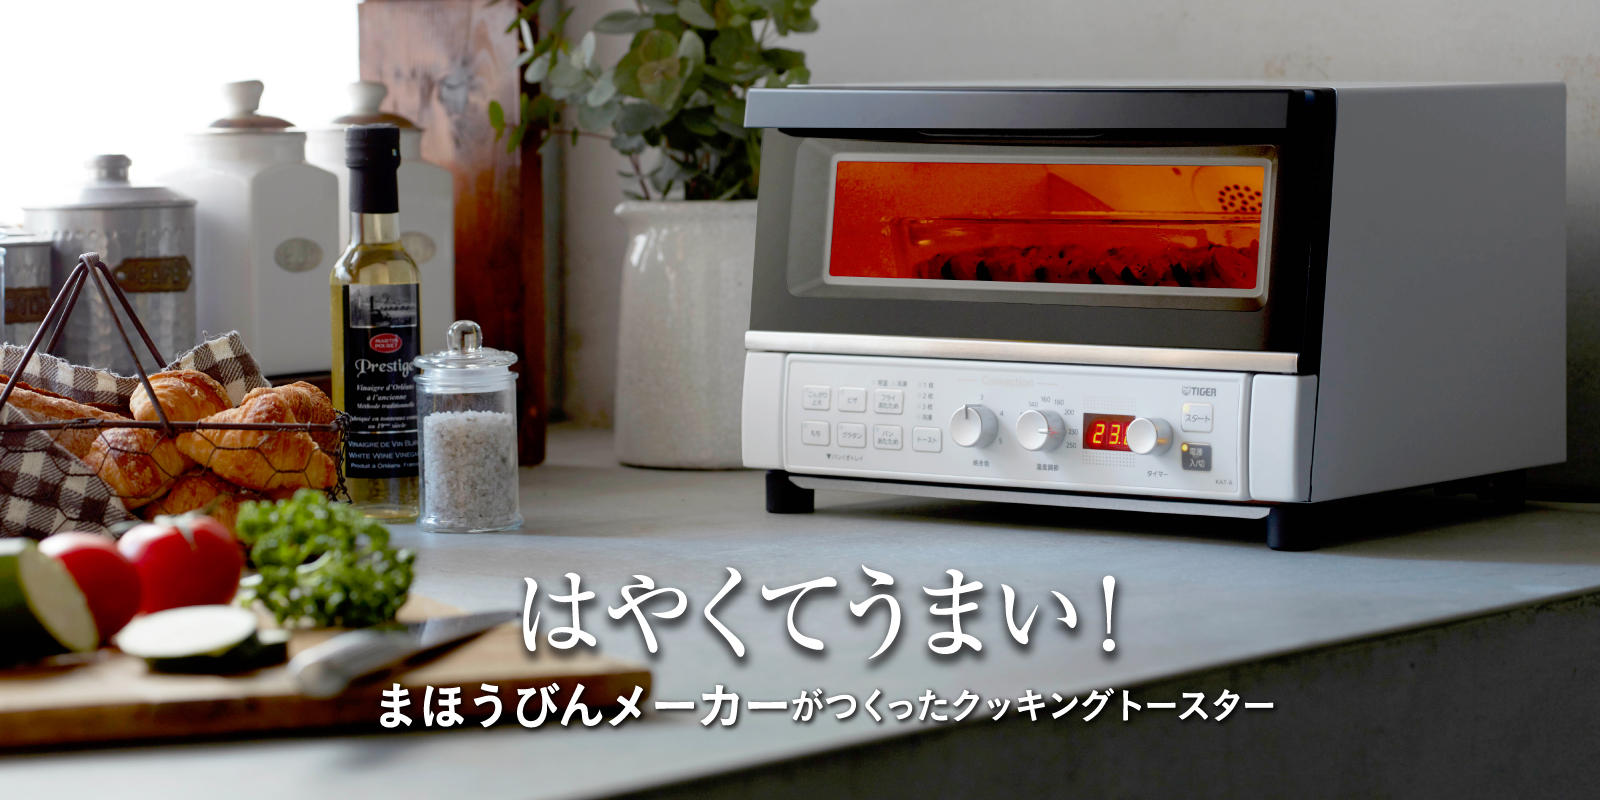 【タイガー】 トースター やきたて フライ 温度調節機能付 コンベクションオーブン おしゃれ ホワイト 白